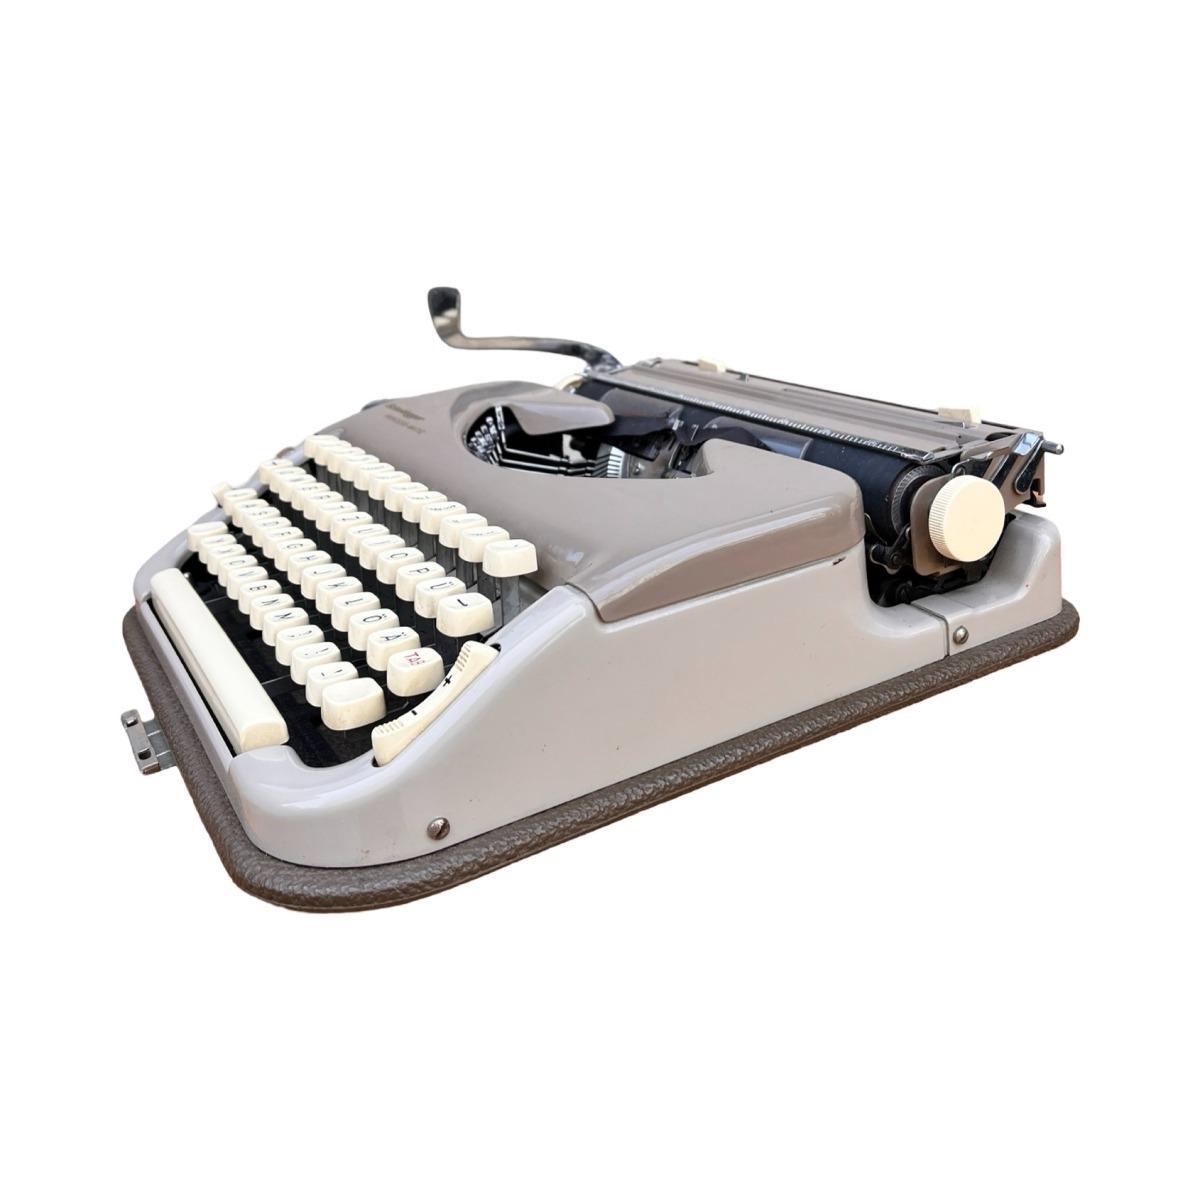 Walizkowa maszyna do pisania, Scheidegger PRINCESS-MATIC, Niemcy, lata 60. nr. 9